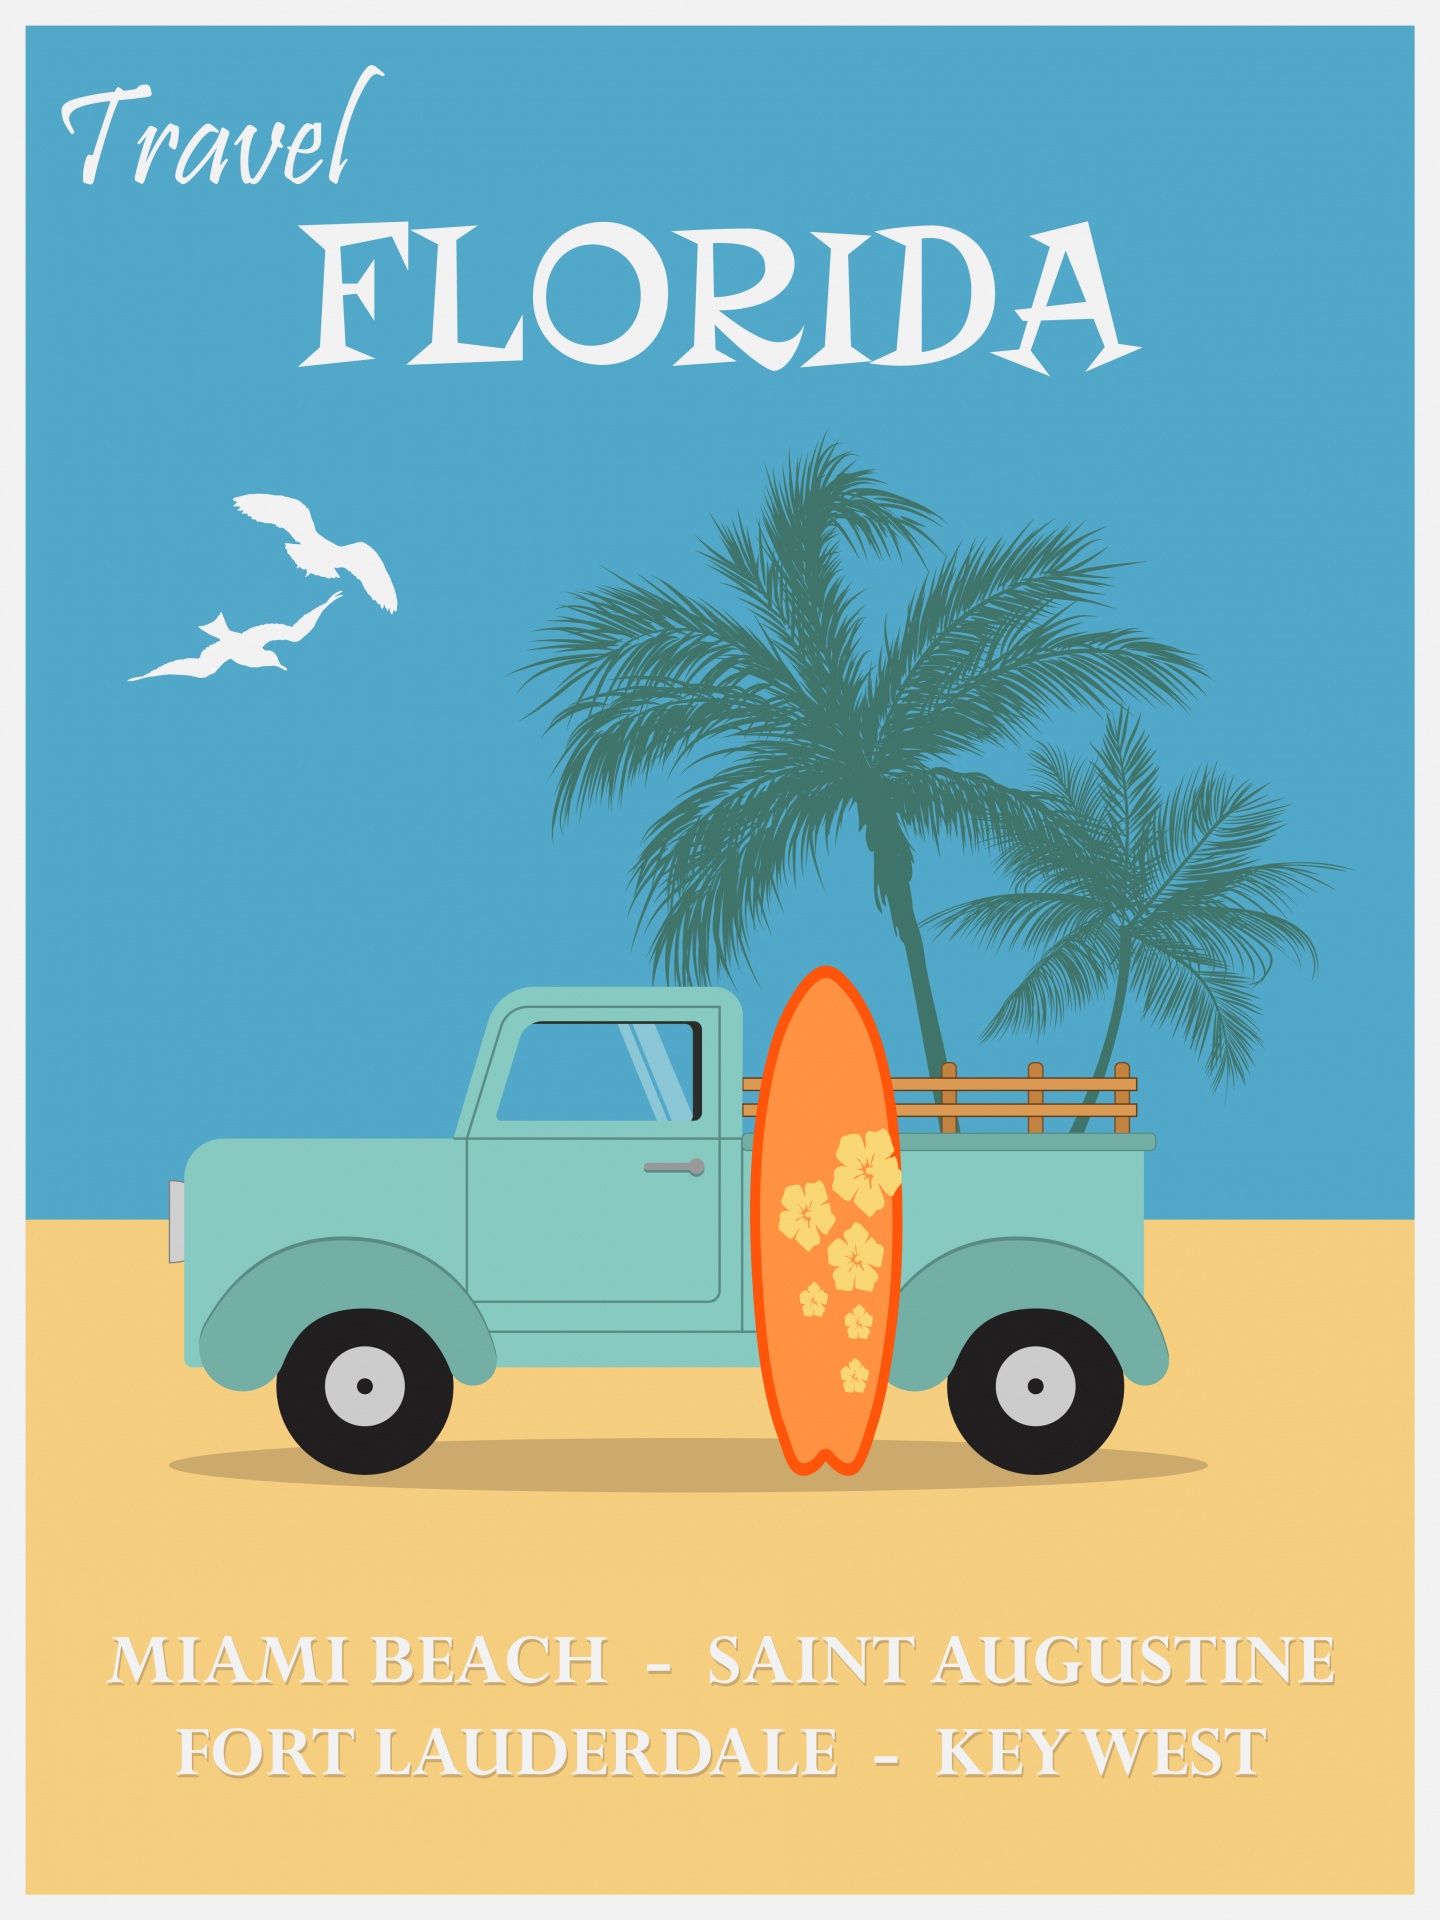 Florida Beaches Travel Poster